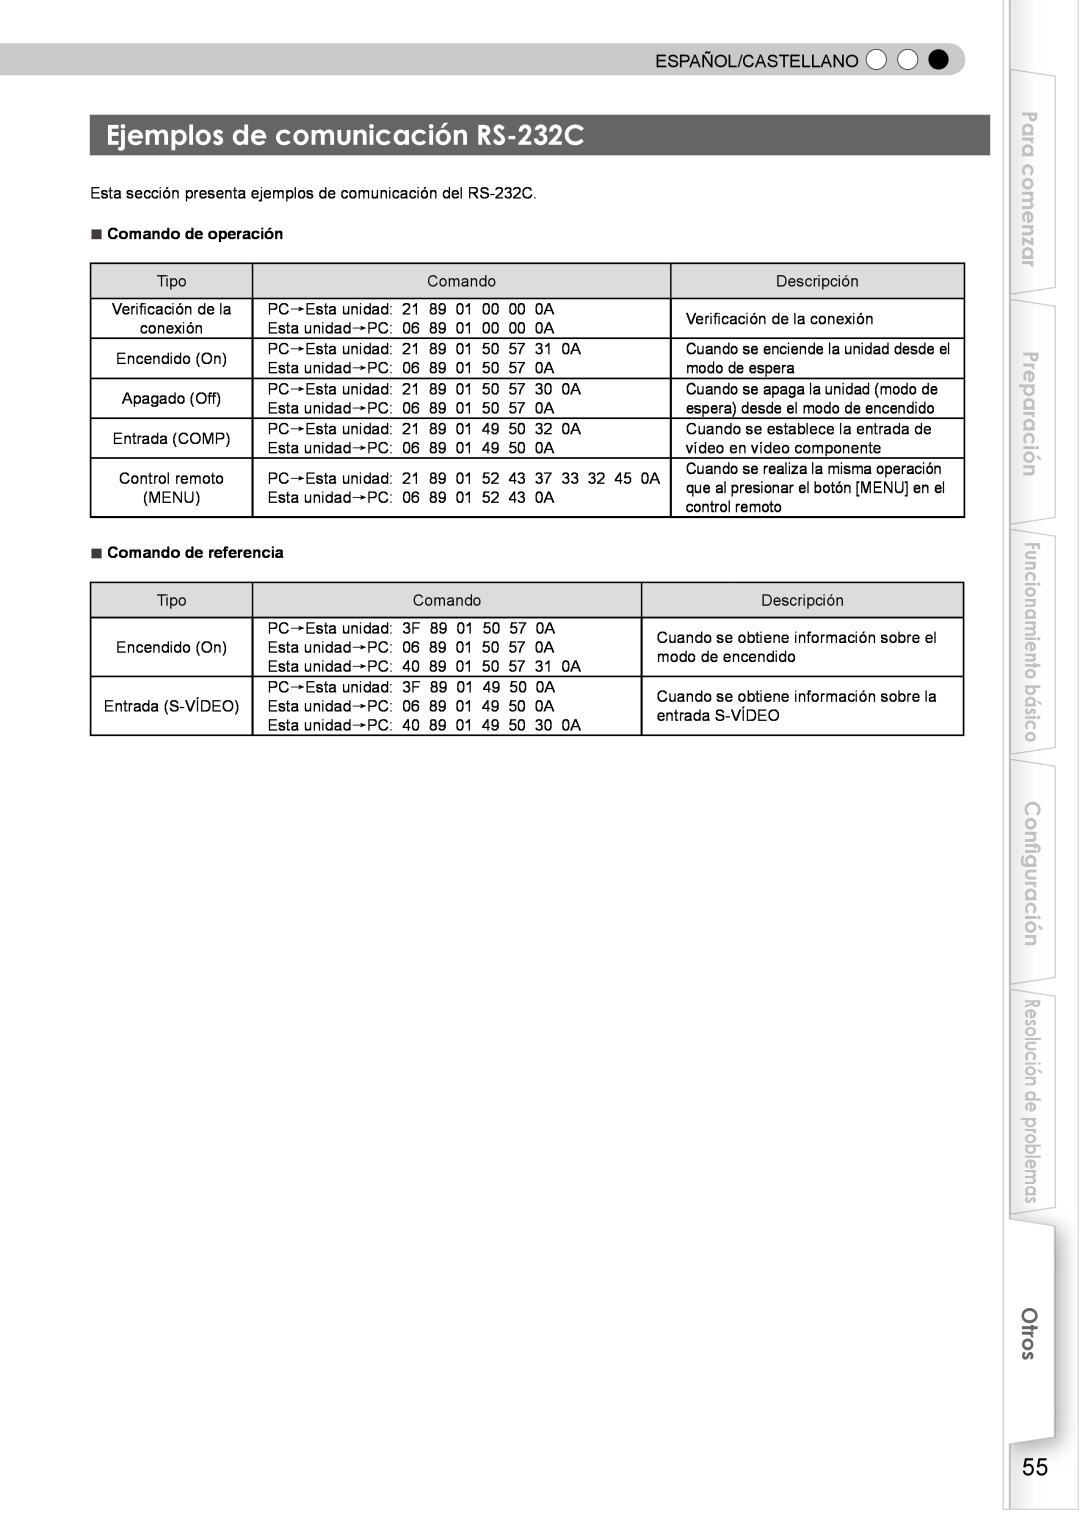 JVC PB006596599-0 manual Ejemplos de comunicación RS-232C, Para comenzar, Otros, Español/Castellano, Comando de operación 